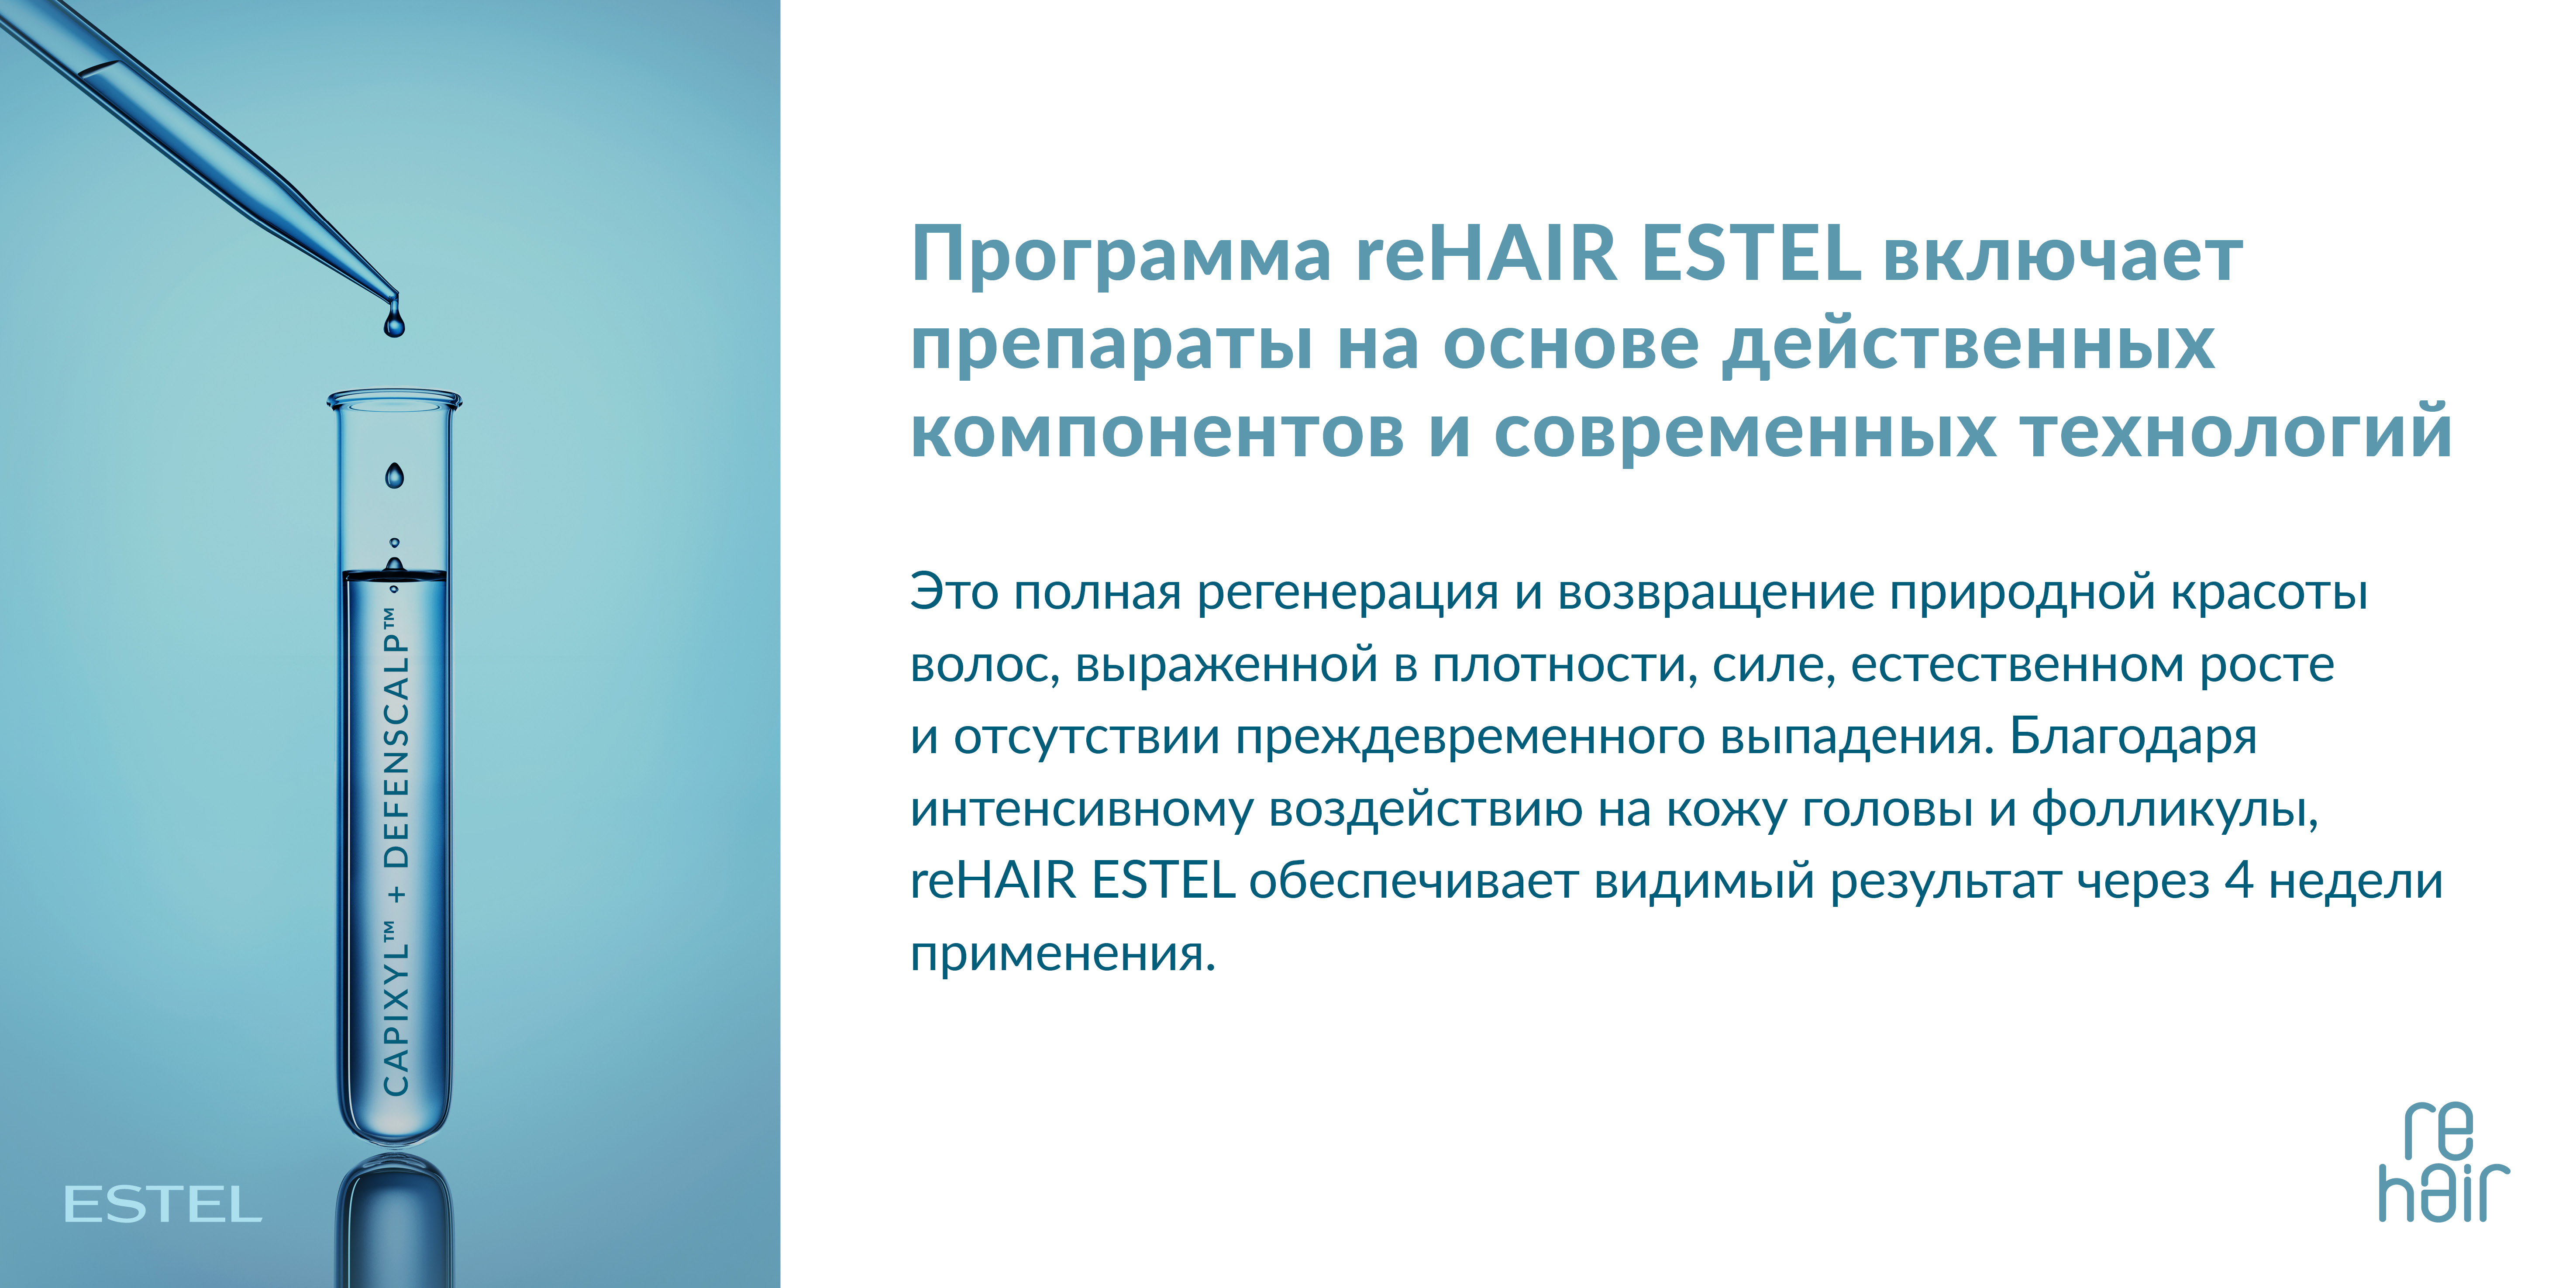 ESTEL reHair Шампунь-prebiotic против выпадения волос для мужчин 250 мл.